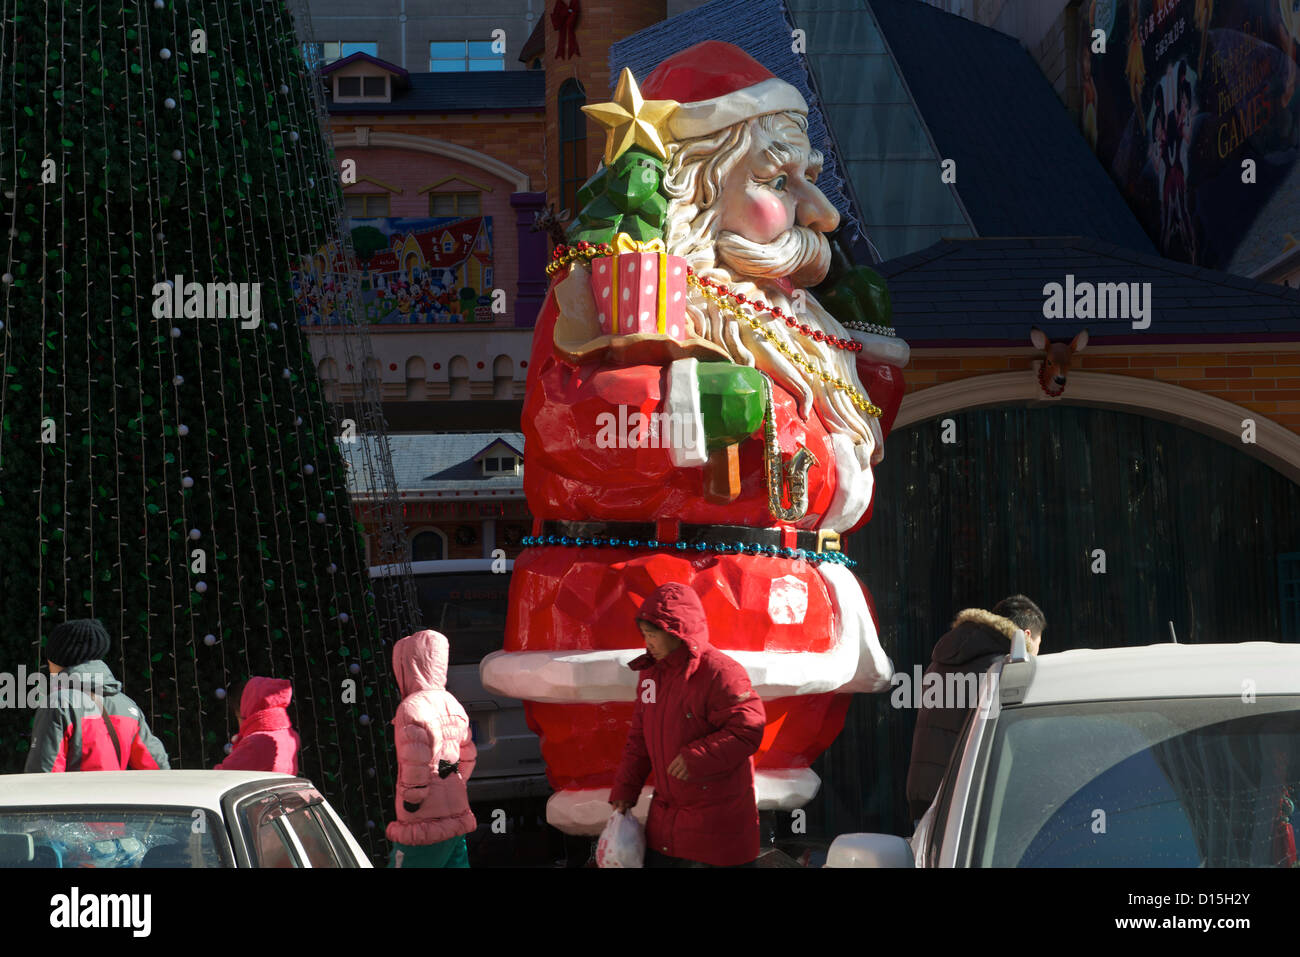 Chinesische Fußgänger Vorbeigehen einen riesigen Weihnachtsmann und Weihnachtsbaum außerhalb eine Warenbörse am 8. Dezember 2012 in Peking, China. Stockfoto